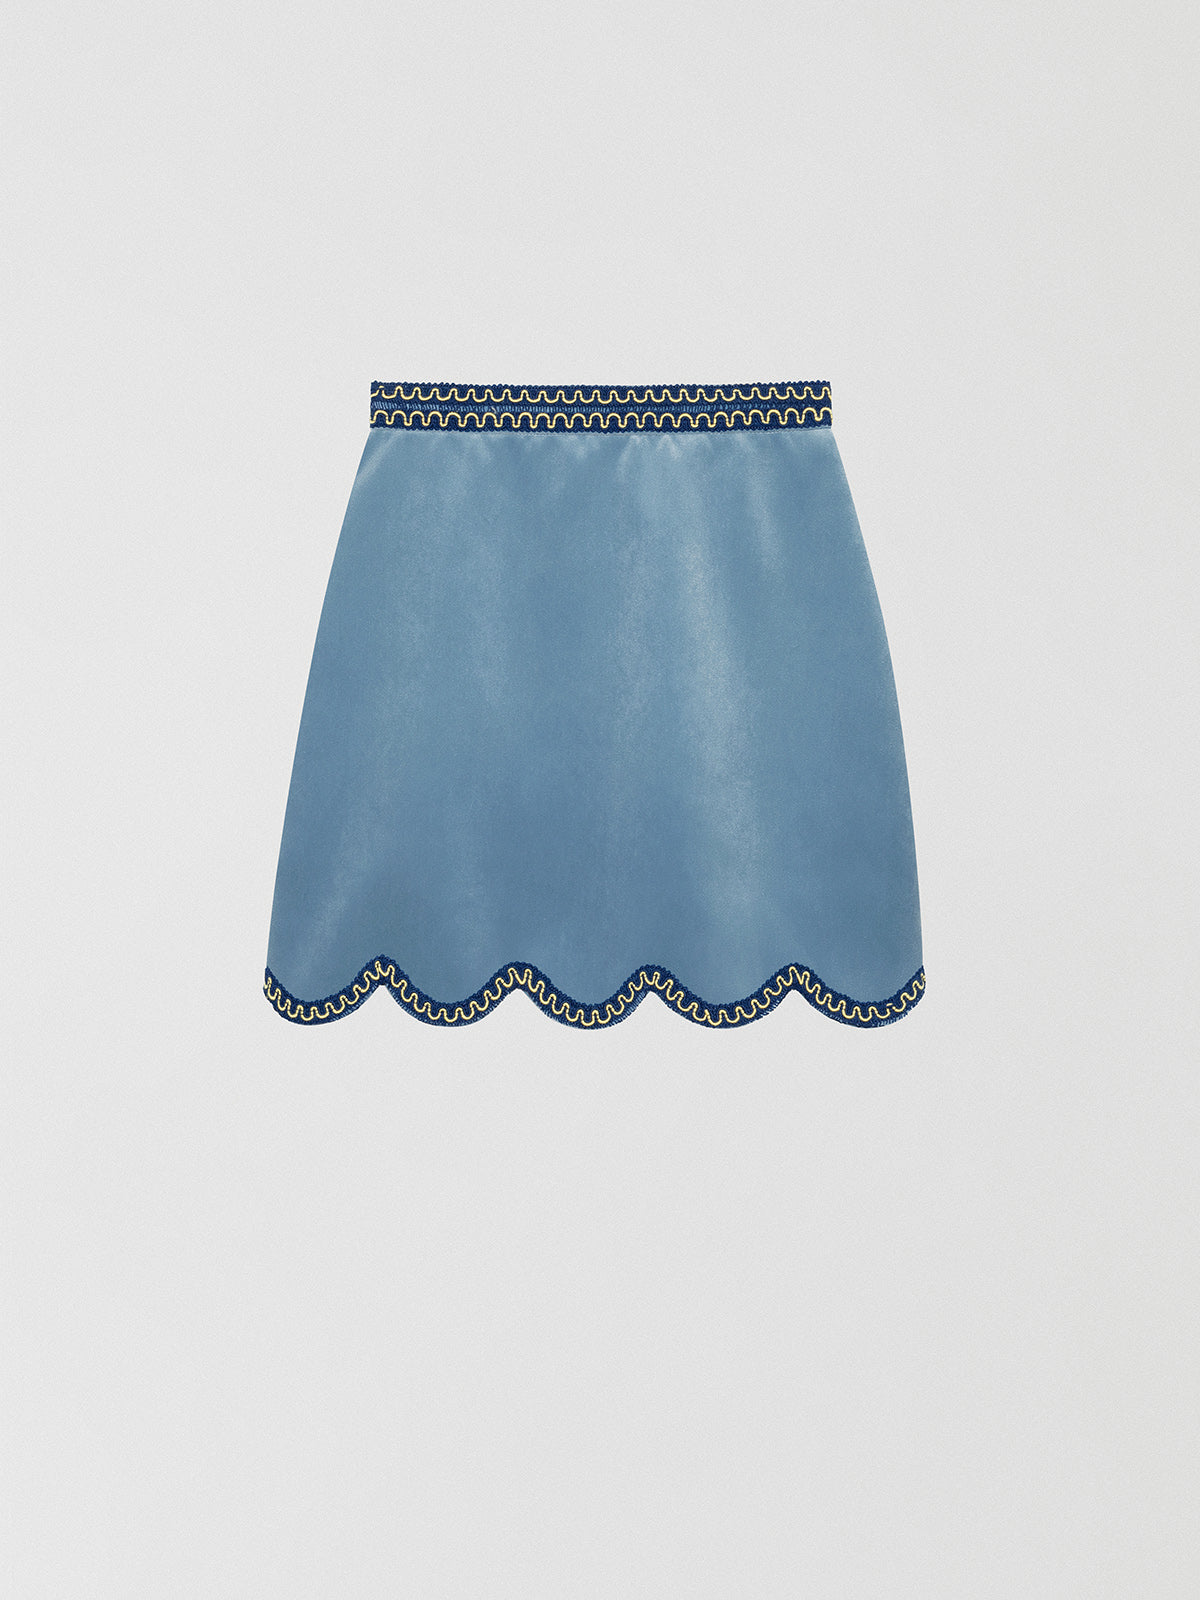 Light blue mini skirt made of velvet with a wavy finish.